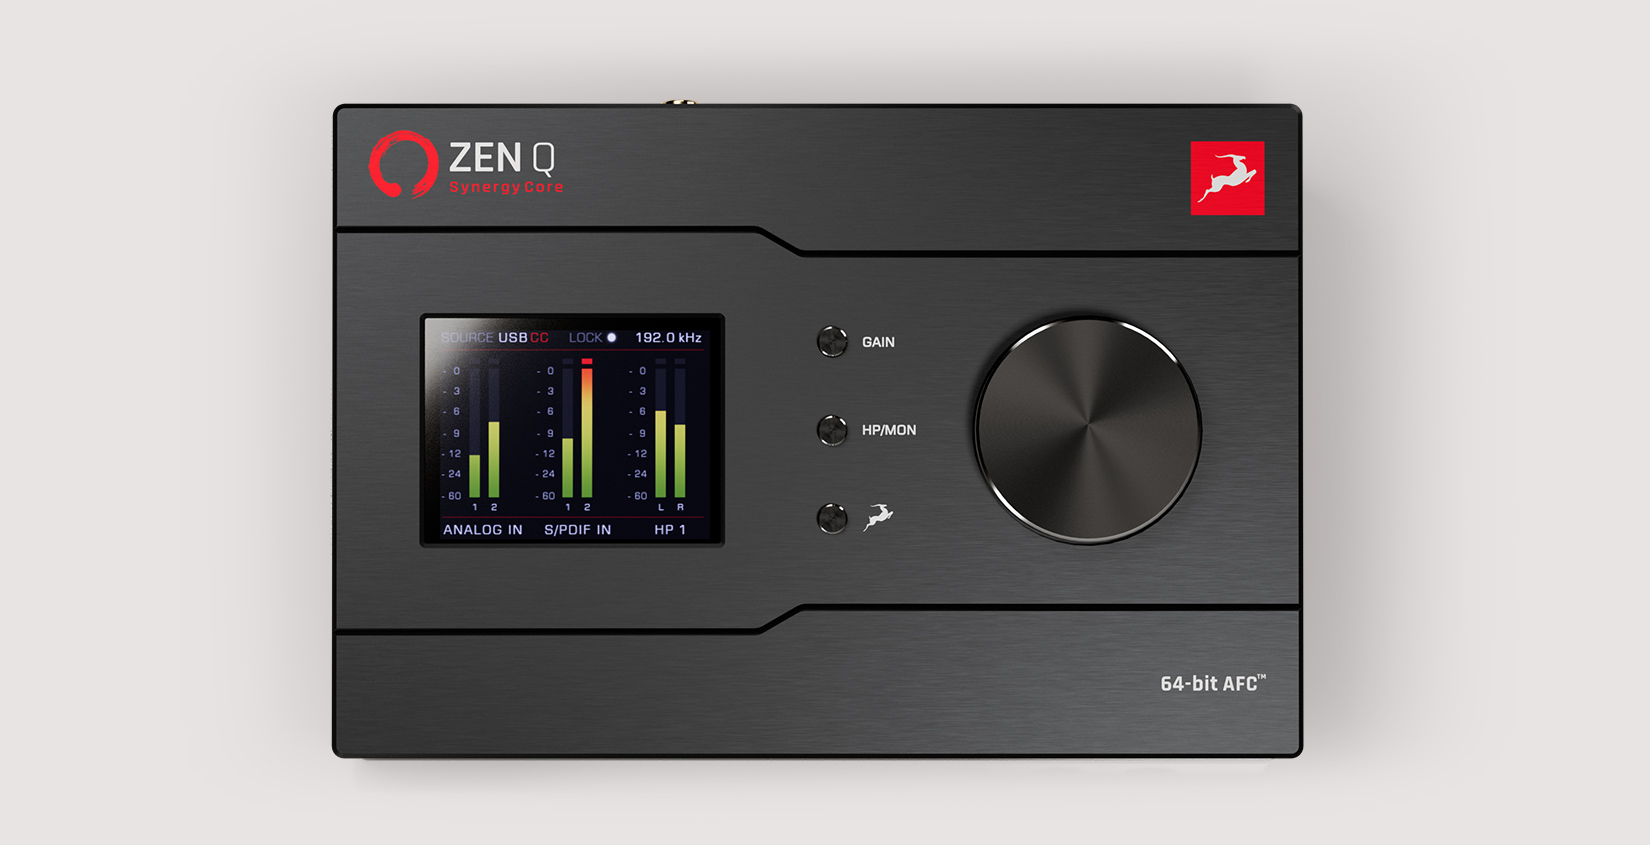 Antelope Audio Zen Go Synergy Core Thunderbolt